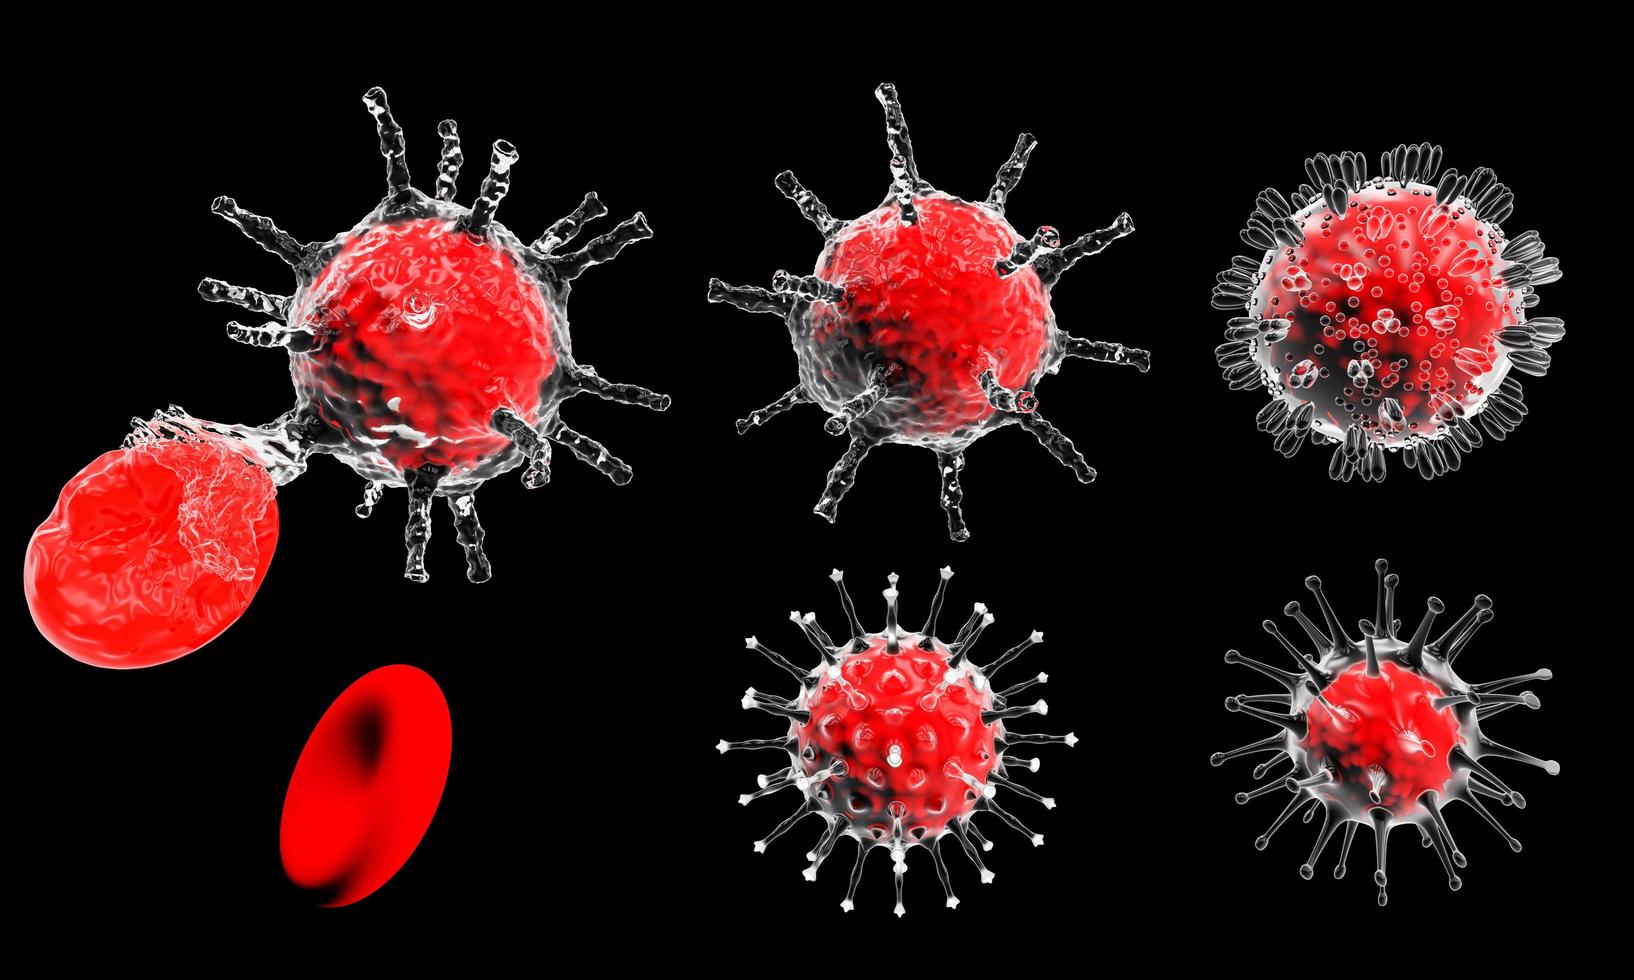 modell för coronavirus covid-19 utbrott och coronavirus influensa koncept på en svart bakgrund som farliga fall av influensa stammar som en pandemi medicinsk hälsorisk med sjukdomscell som en 3d rendering foto